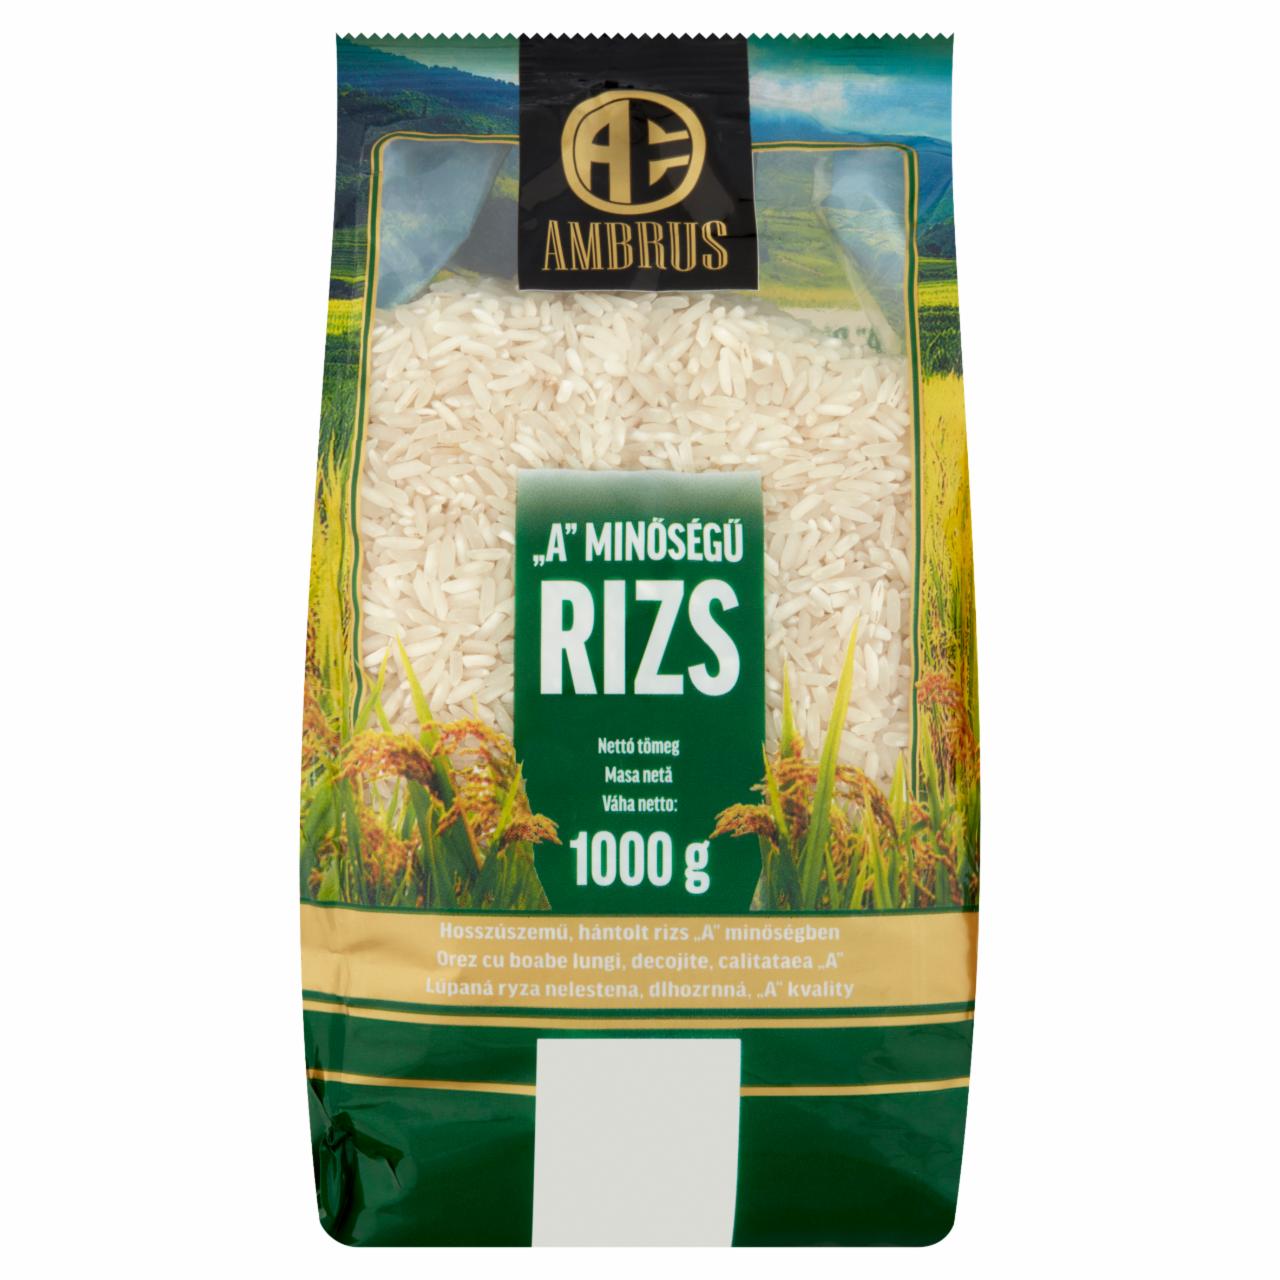 Képek - Ambrus ,,A' minőségű rizs 1000 g